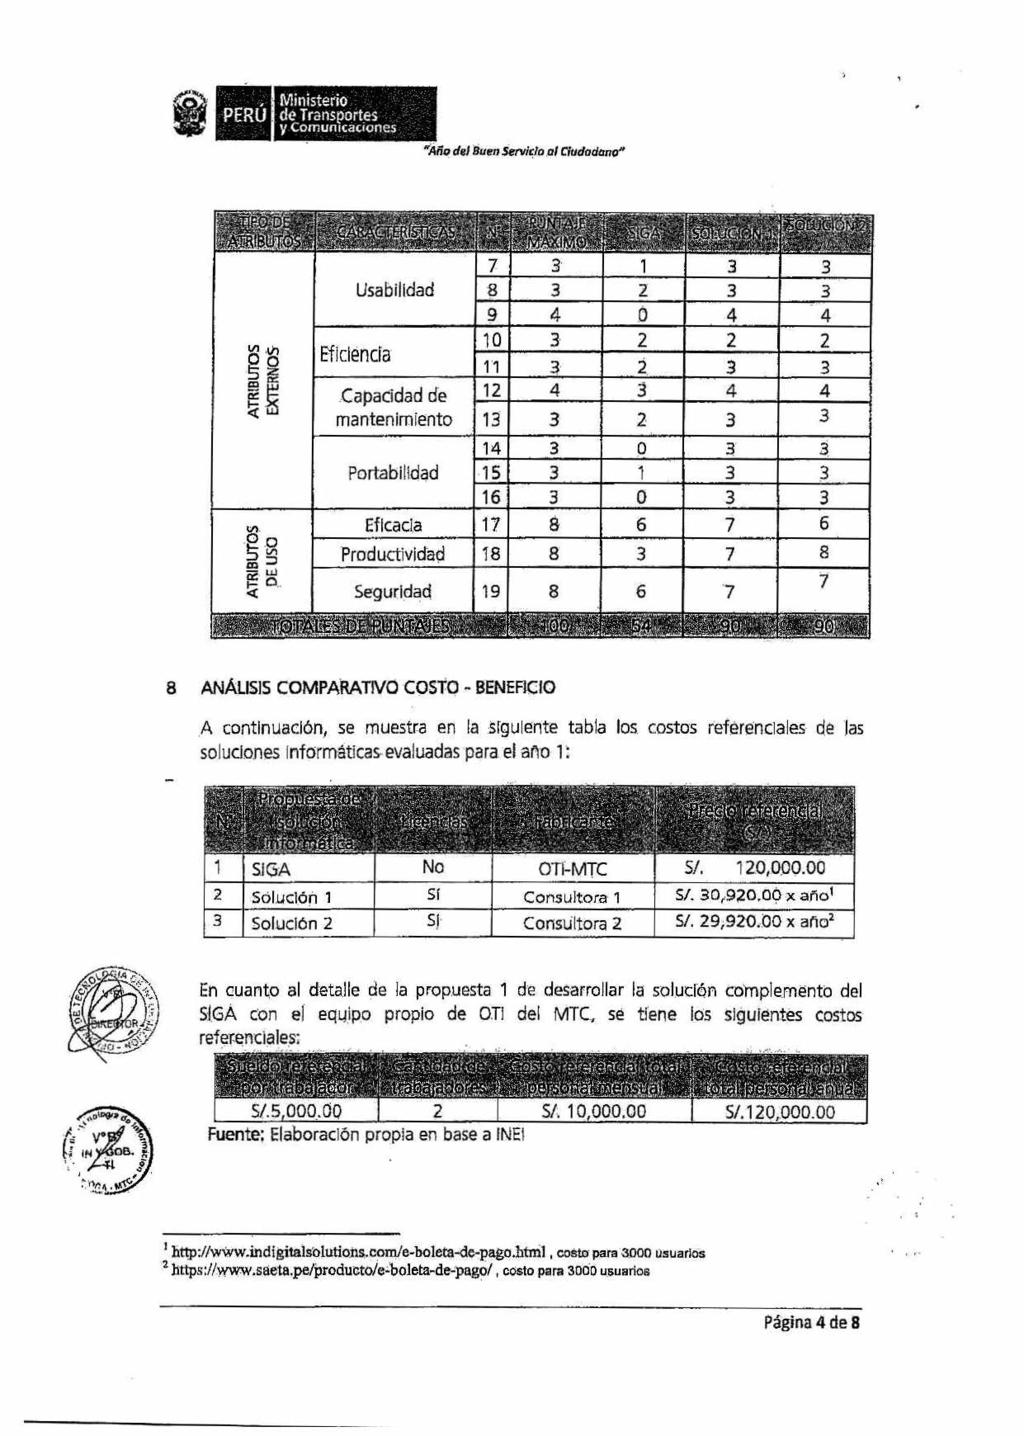 Ministerio y Cornunicaciones "Áfin del Buen Servicio Lludadano" til,,, '-. Lk,, y Aíltij i, "-, '.)., t.,h -? k '.